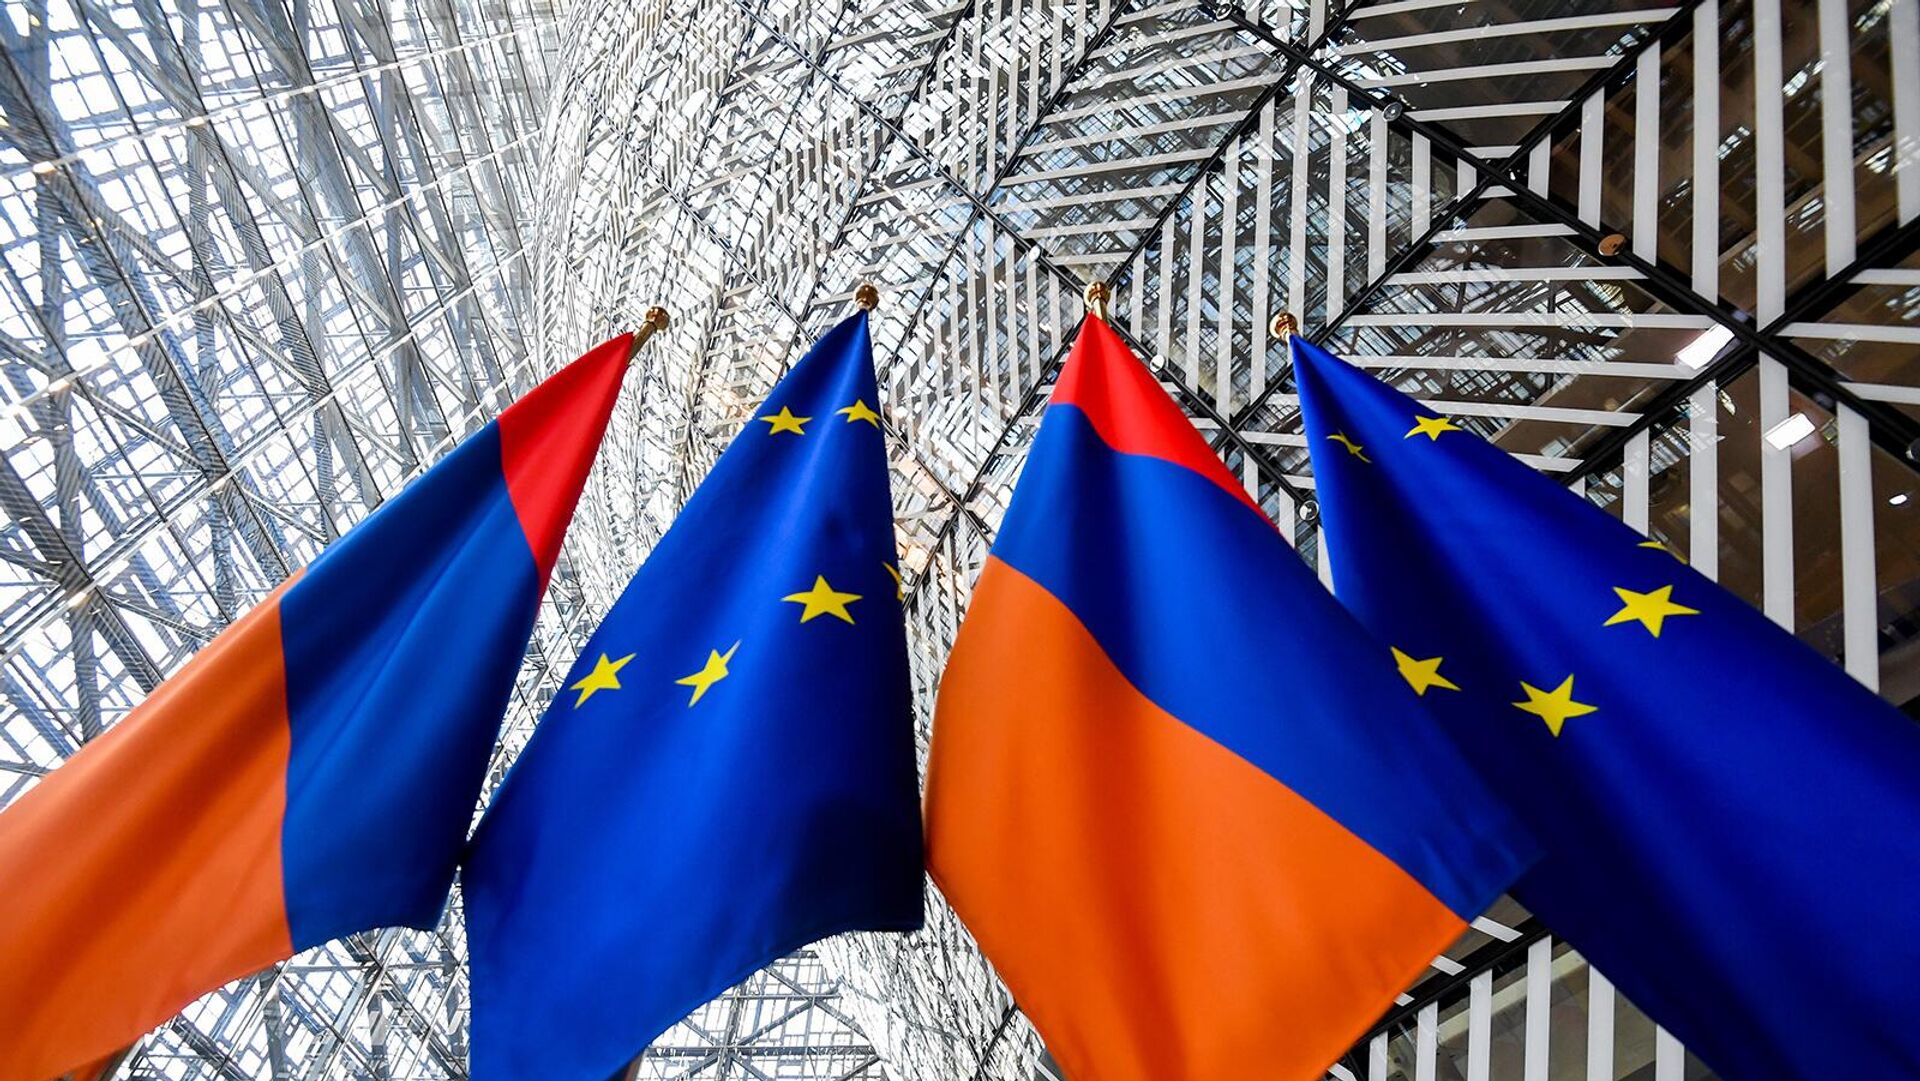 Пашинян в интервью "Kathimerini": Армения давно готова к претворению либерализации визового режима в жизнь  